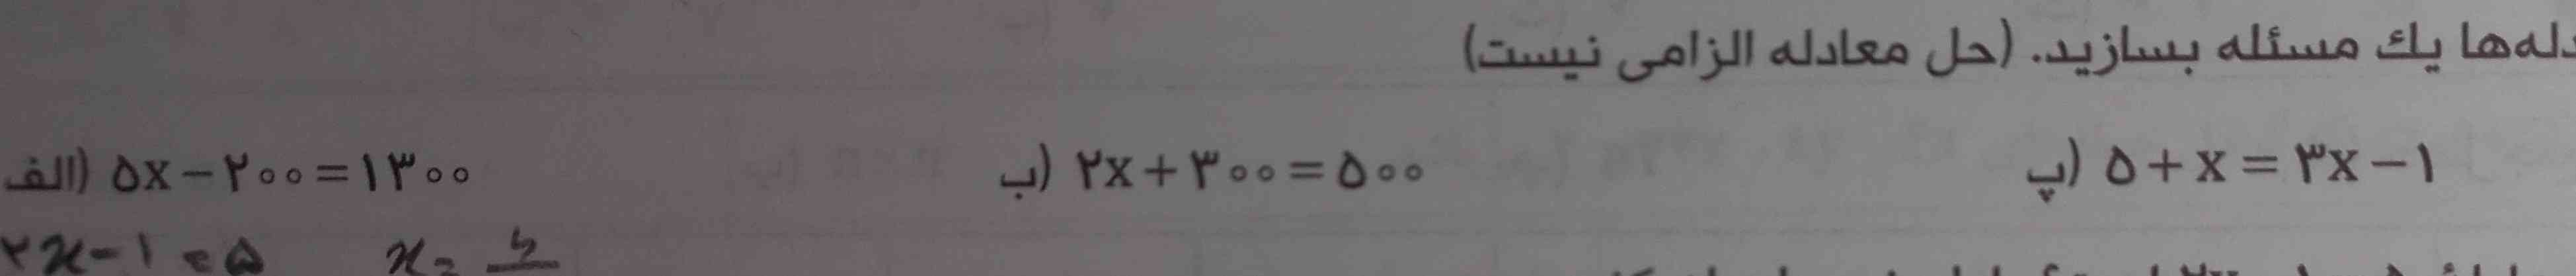 سلام ، میشه برای این ۳ تا معادله مسئله بسازید؟ لطفا
ممنون